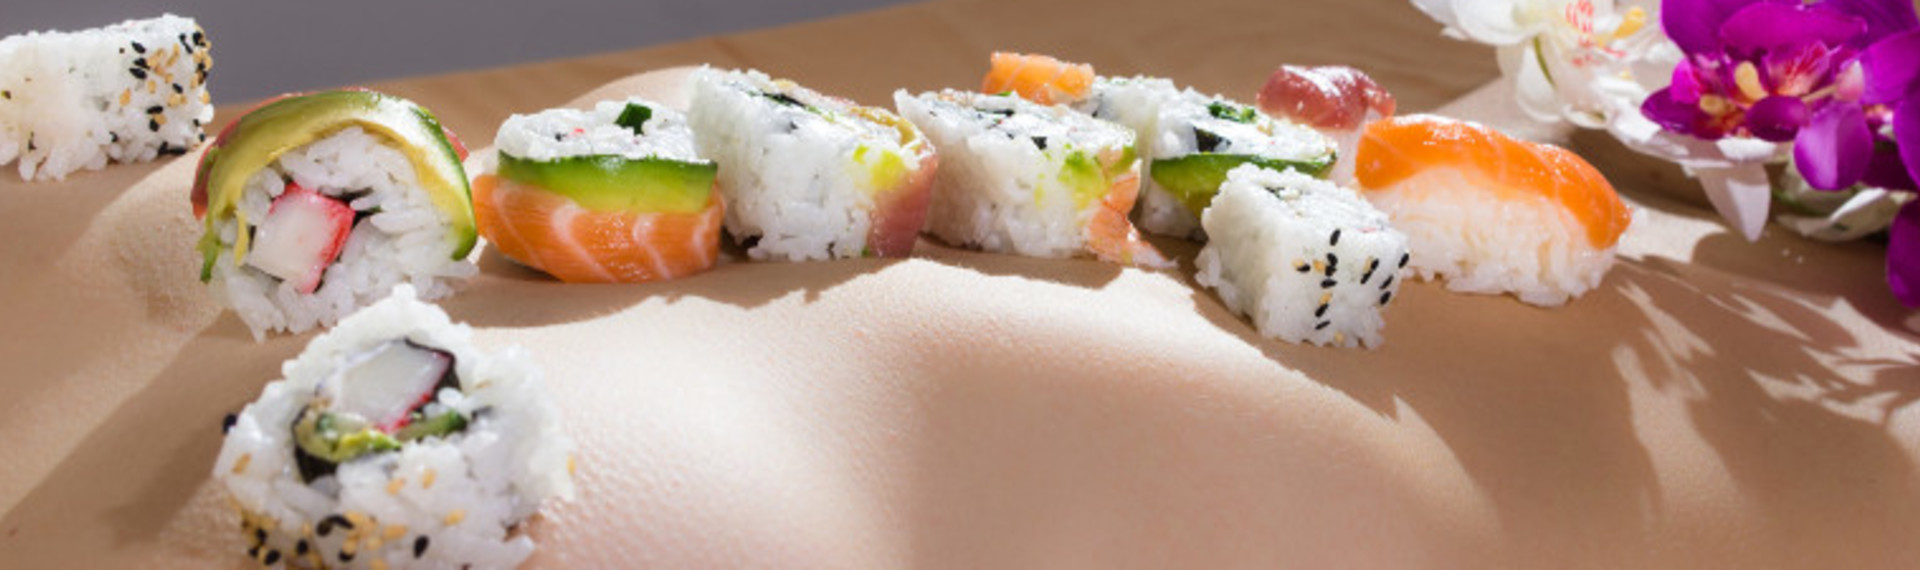 Nakensushi i Amsterdam - spis sushi av kroppen til en naken kvinne